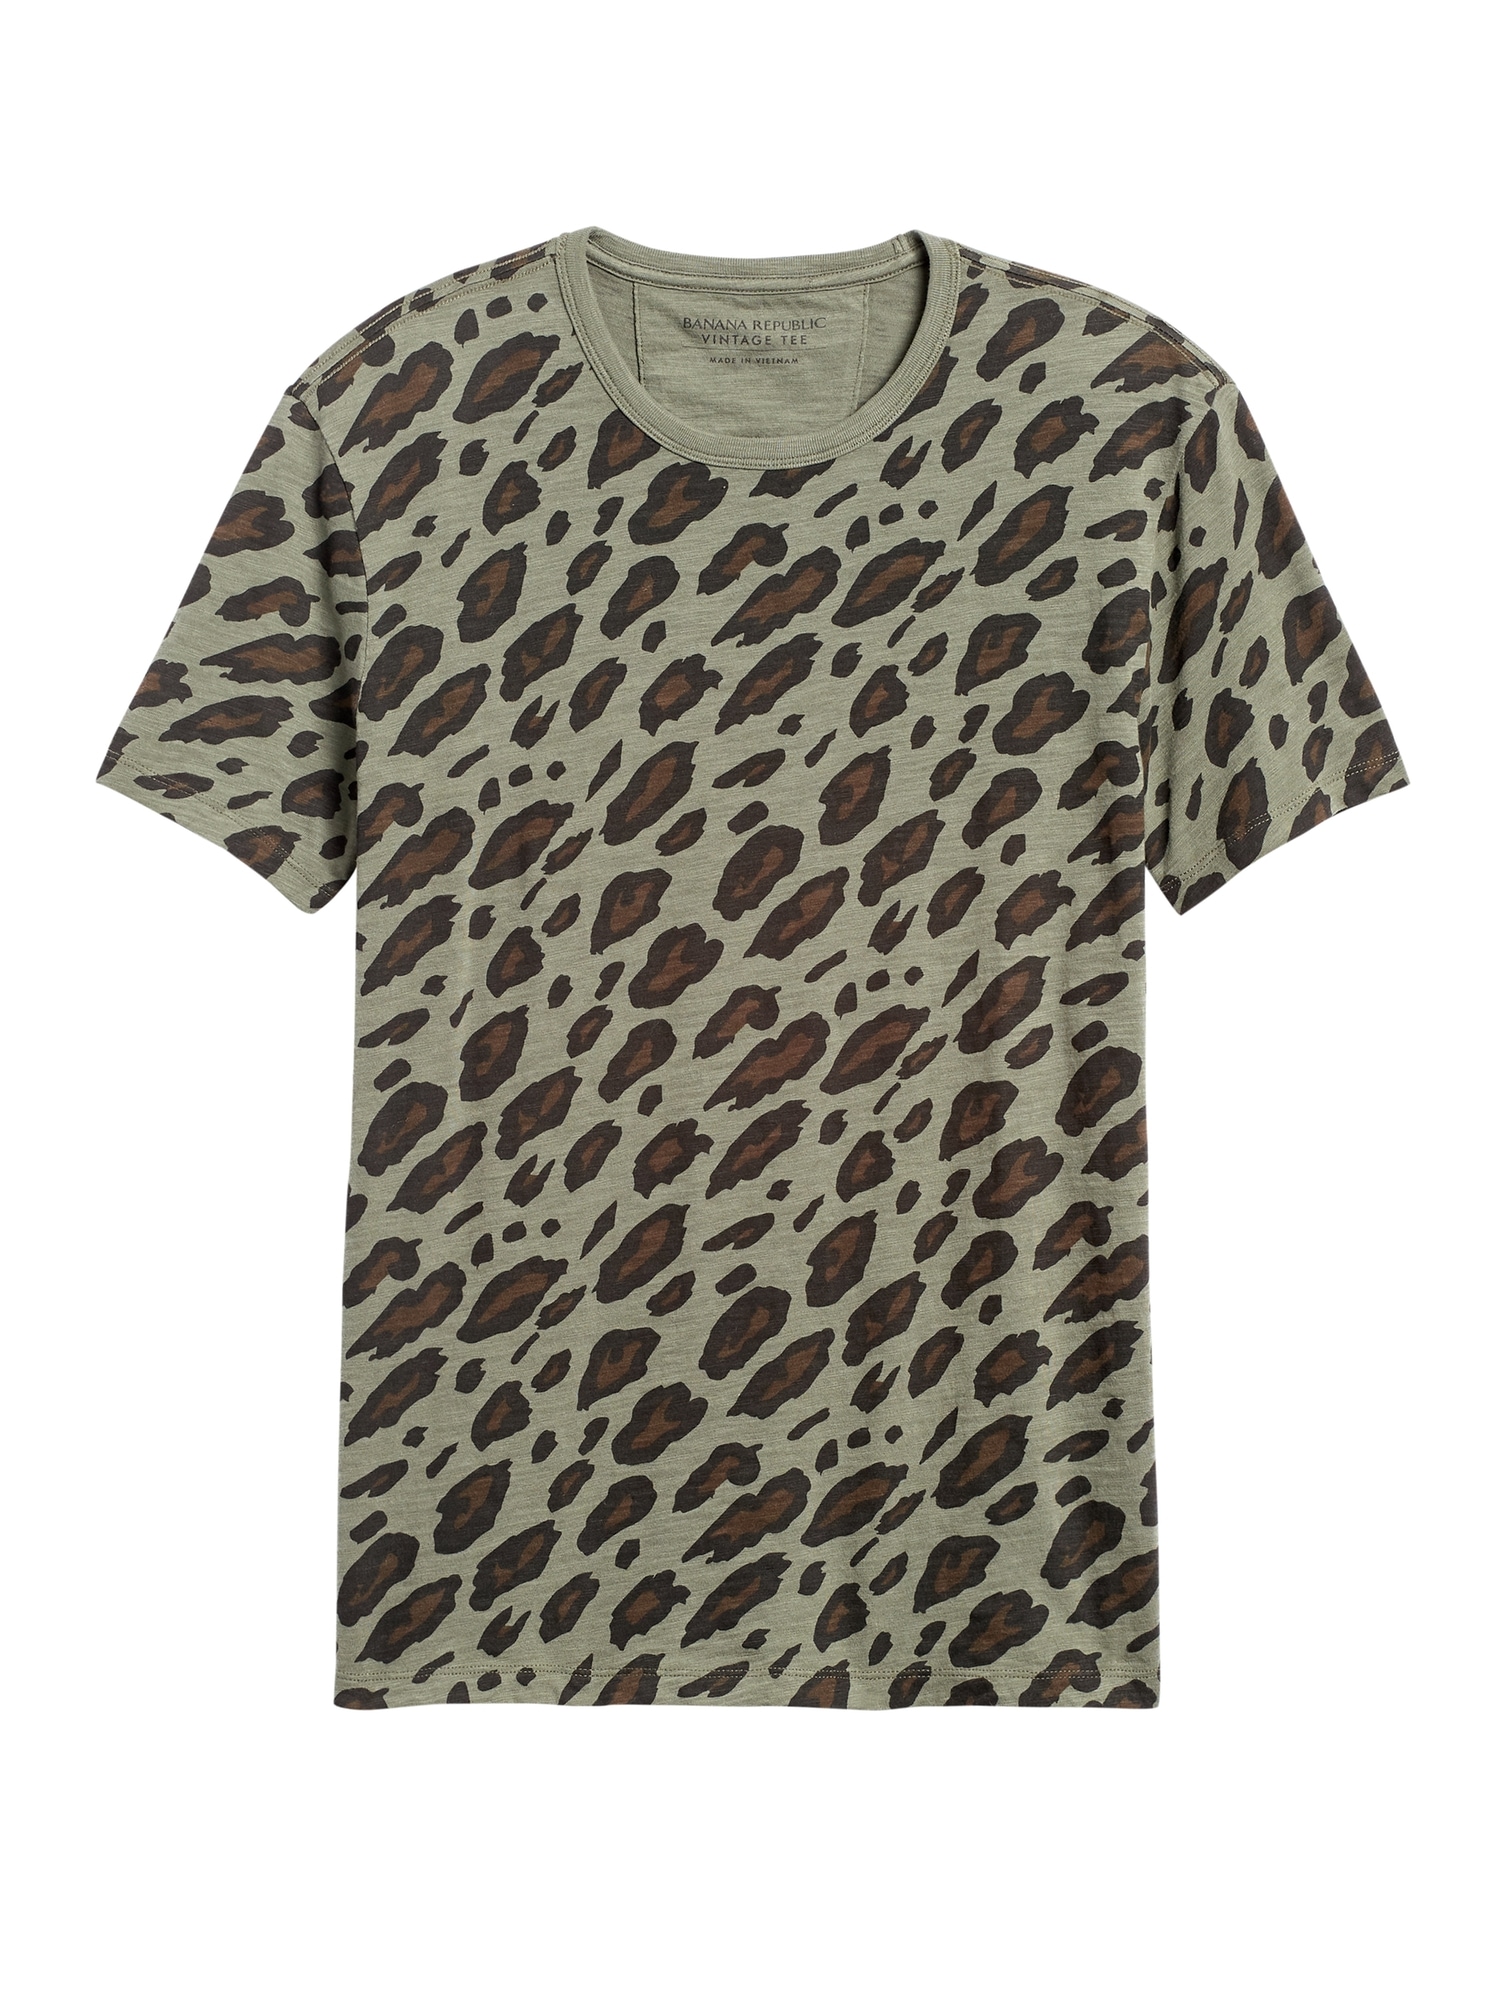 Leopard Camo Graphic T-Shirt